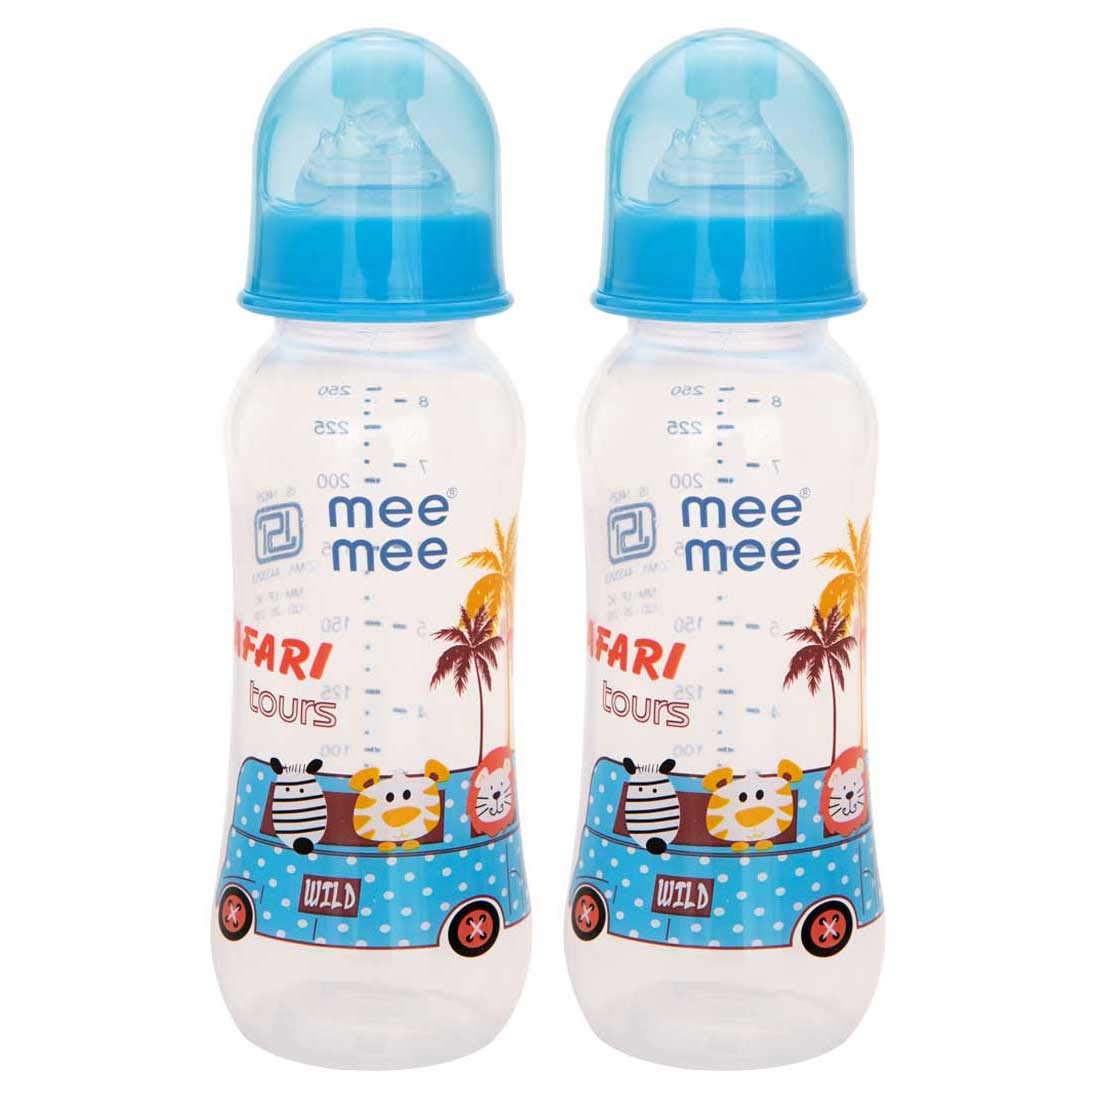 Mee Mee Printed Premium Baby Feeding Bottle ( Multi Sky Blue, 250ml - Pack of 2)